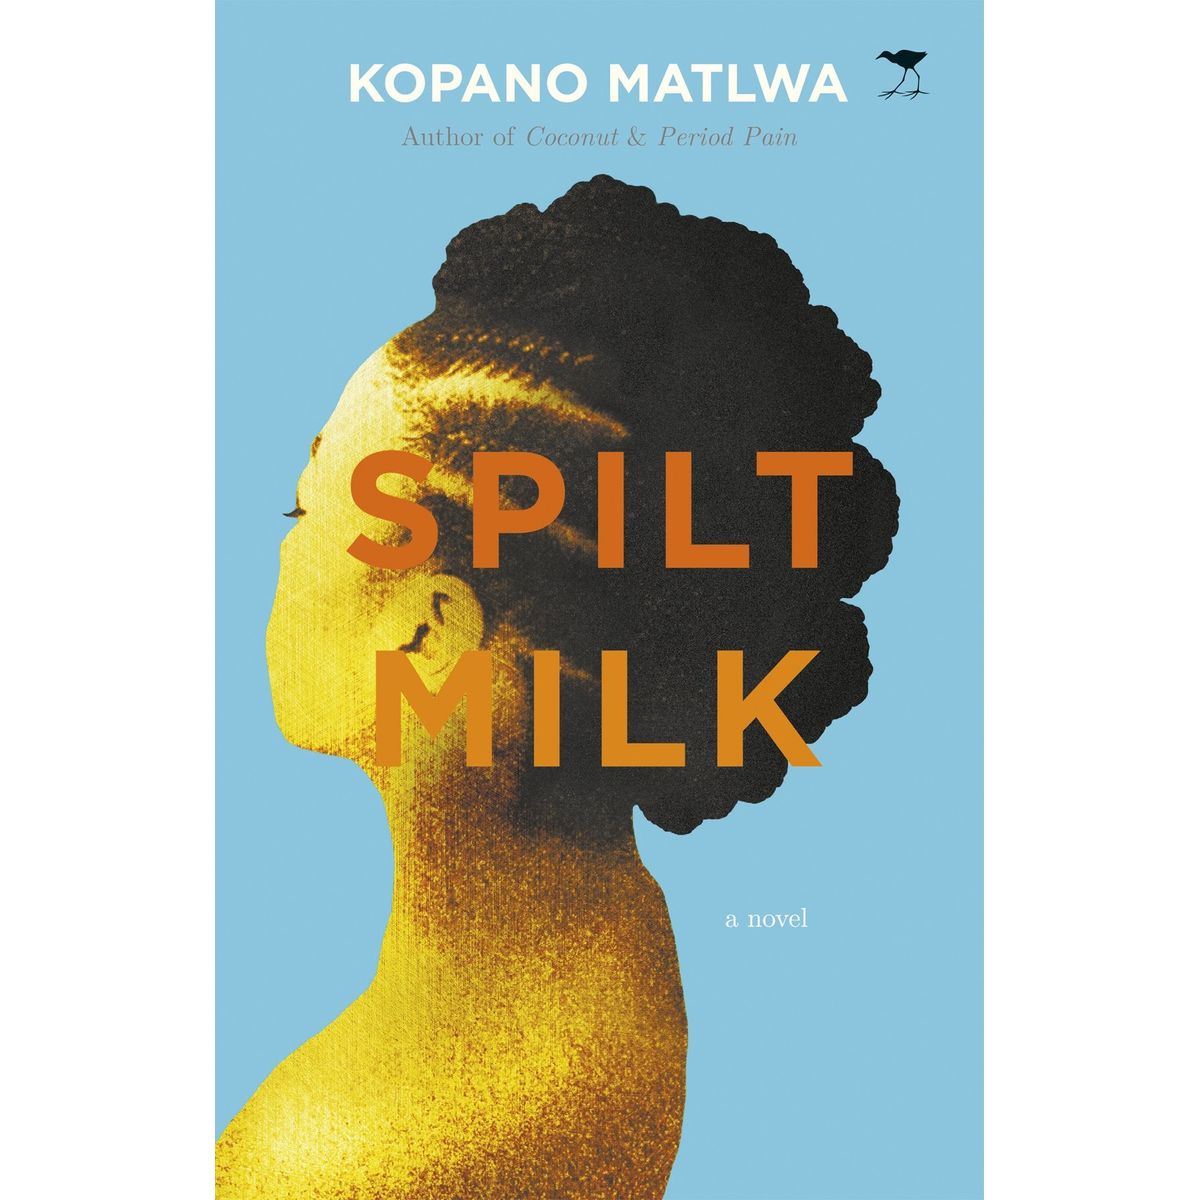 ISBN: 9781770097919 / 1770097910 - Spilt Milk by Kopano Matlwa [2010]